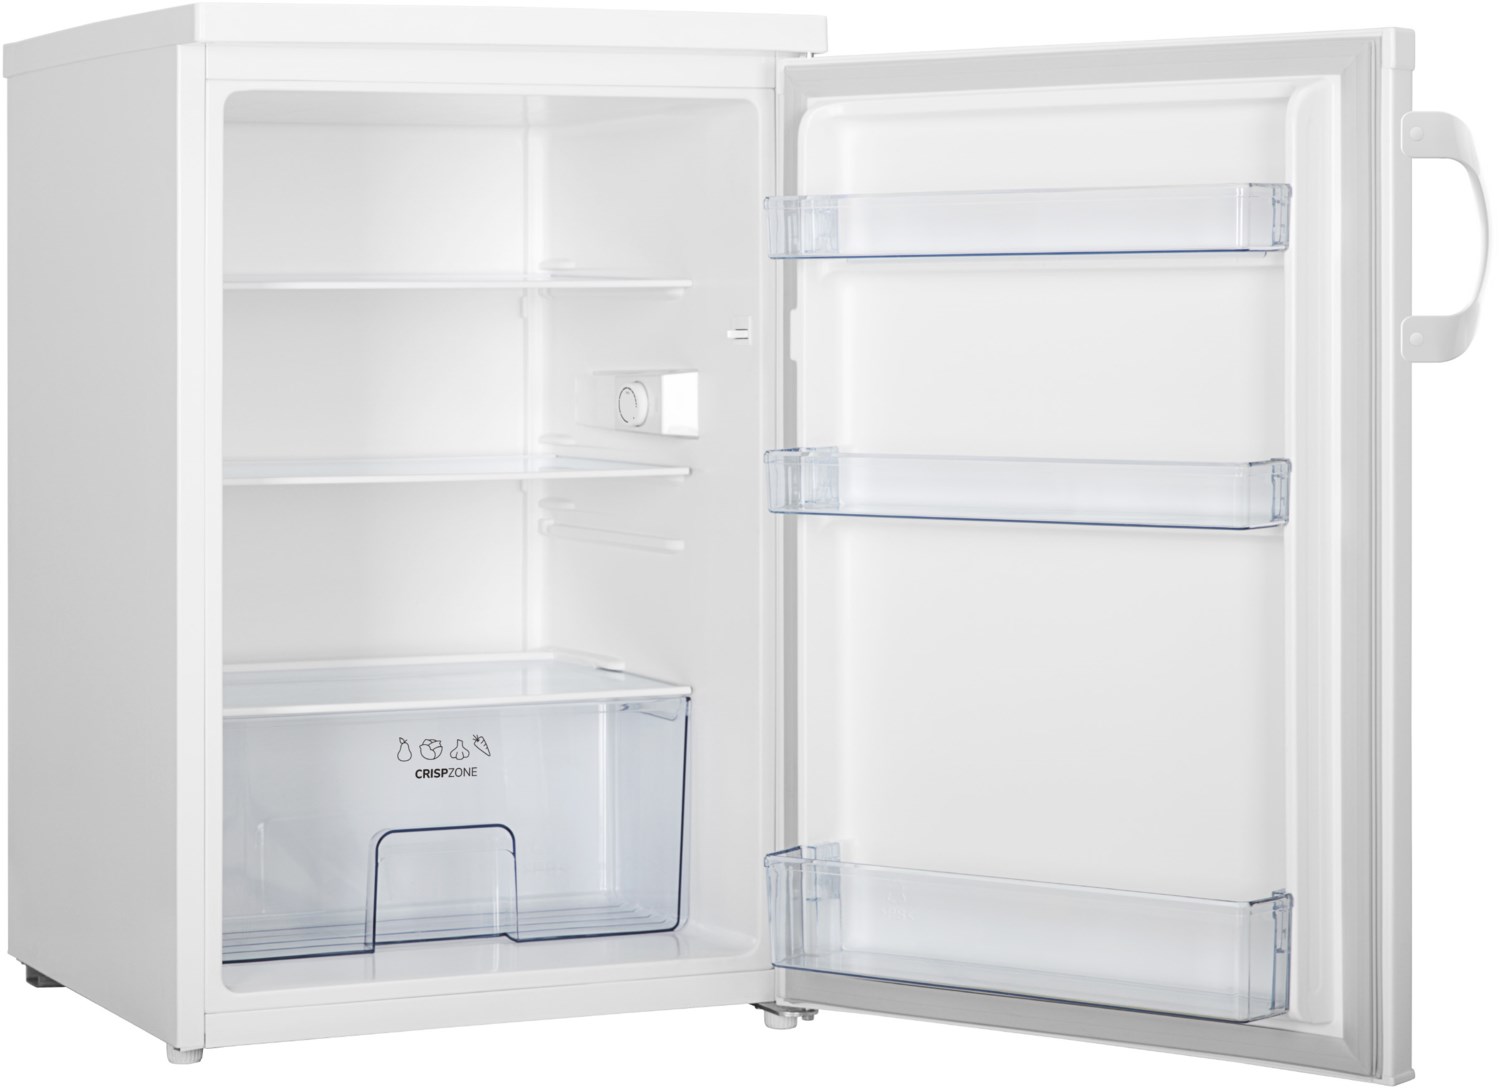 R492PW Tischkühlschrank weiß / E